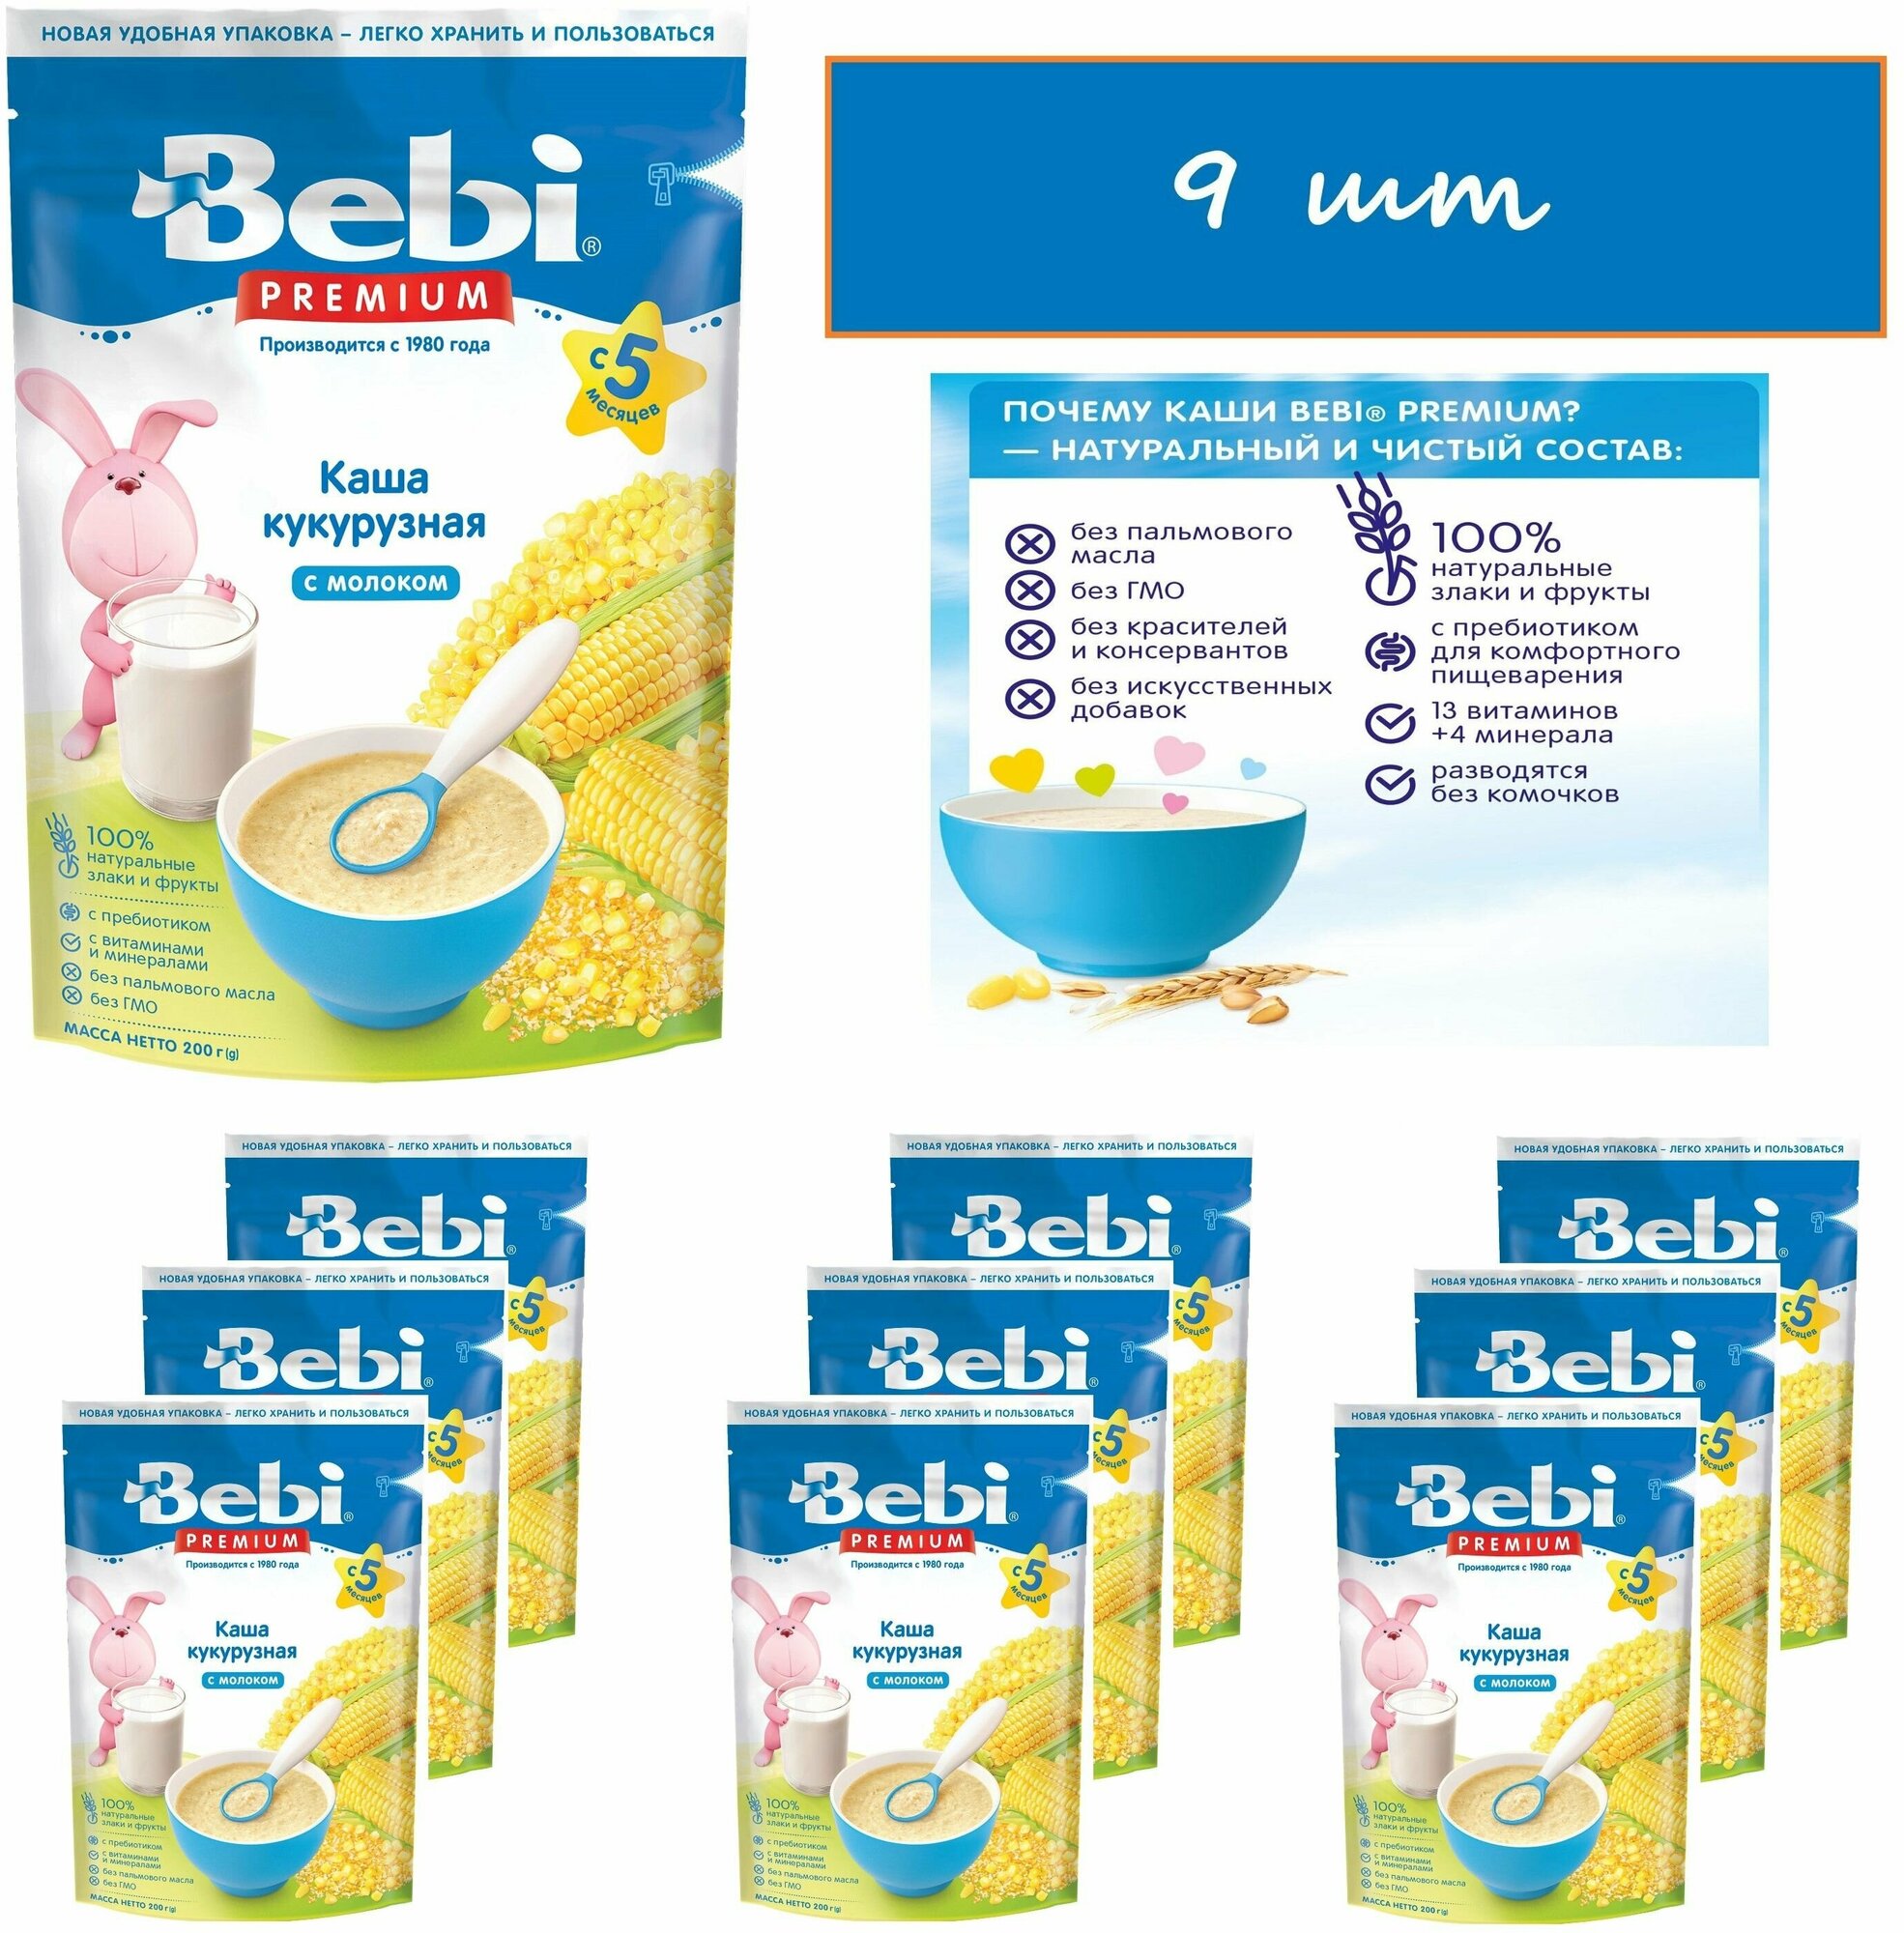 Bebi Premium молочная каша Кукурузная с 5 мес. 200 гр*9шт